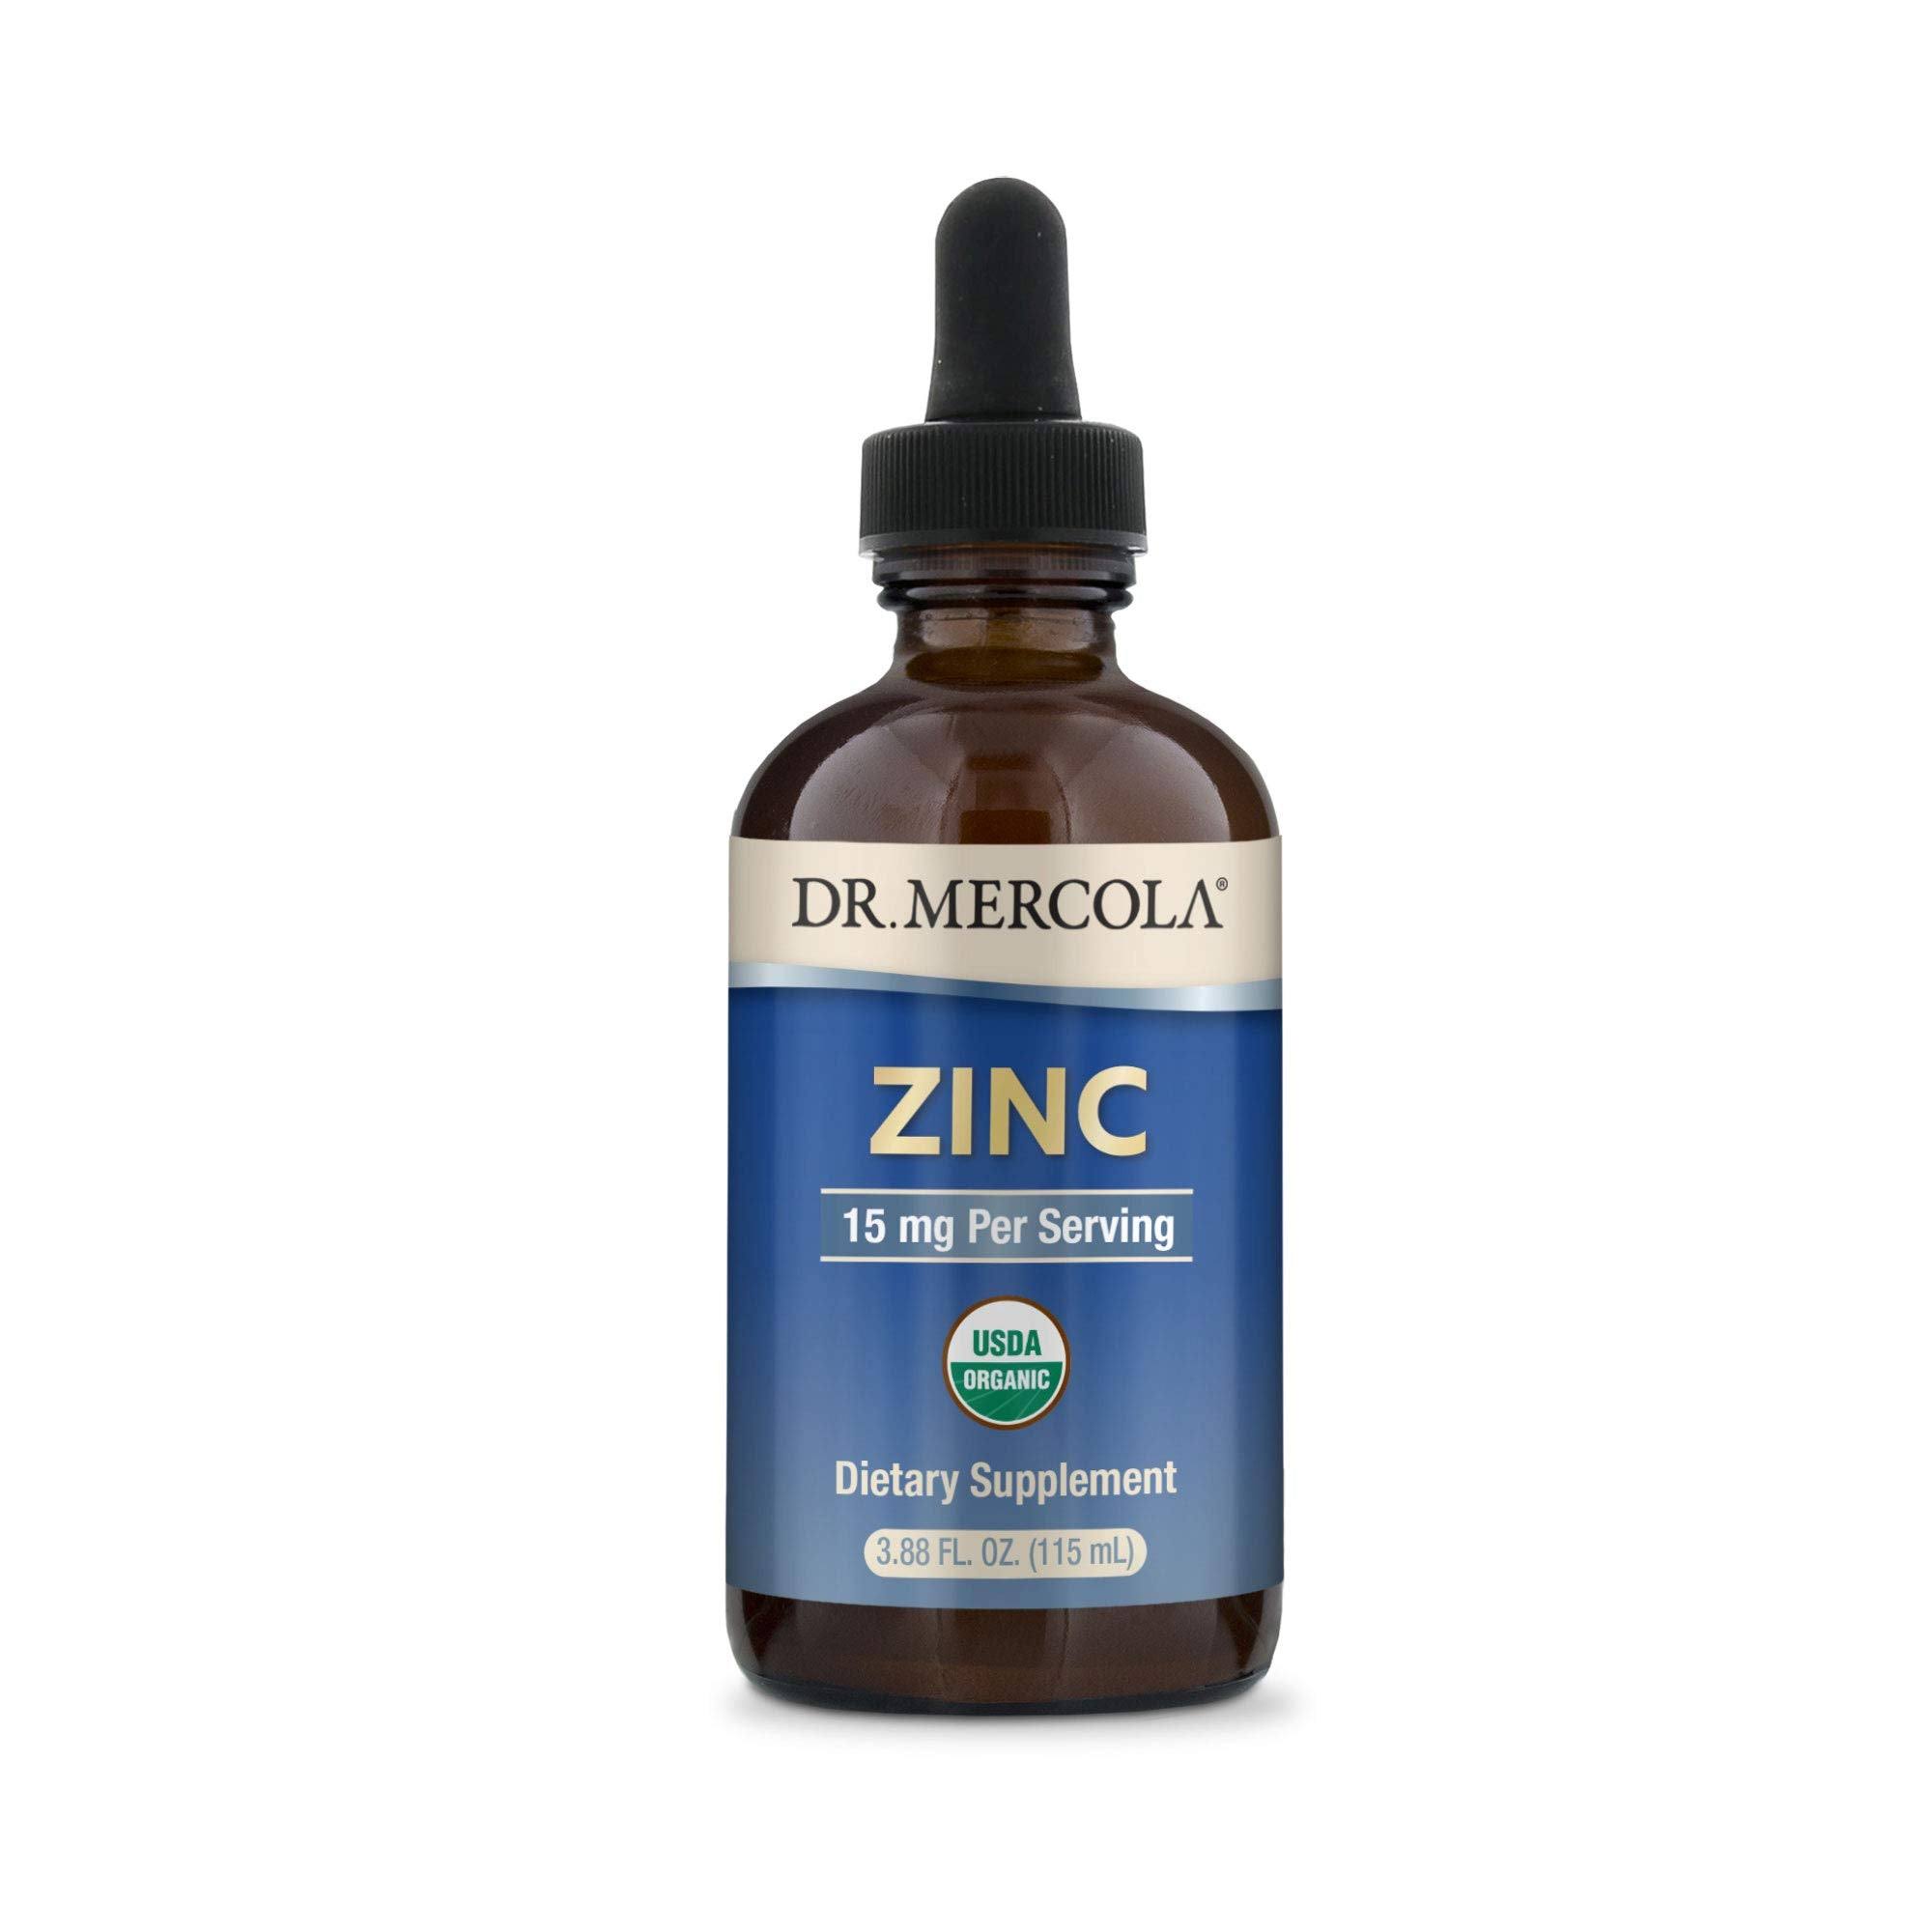 Dr. Mercola Zinc, 15 mg - 3.88 fl oz